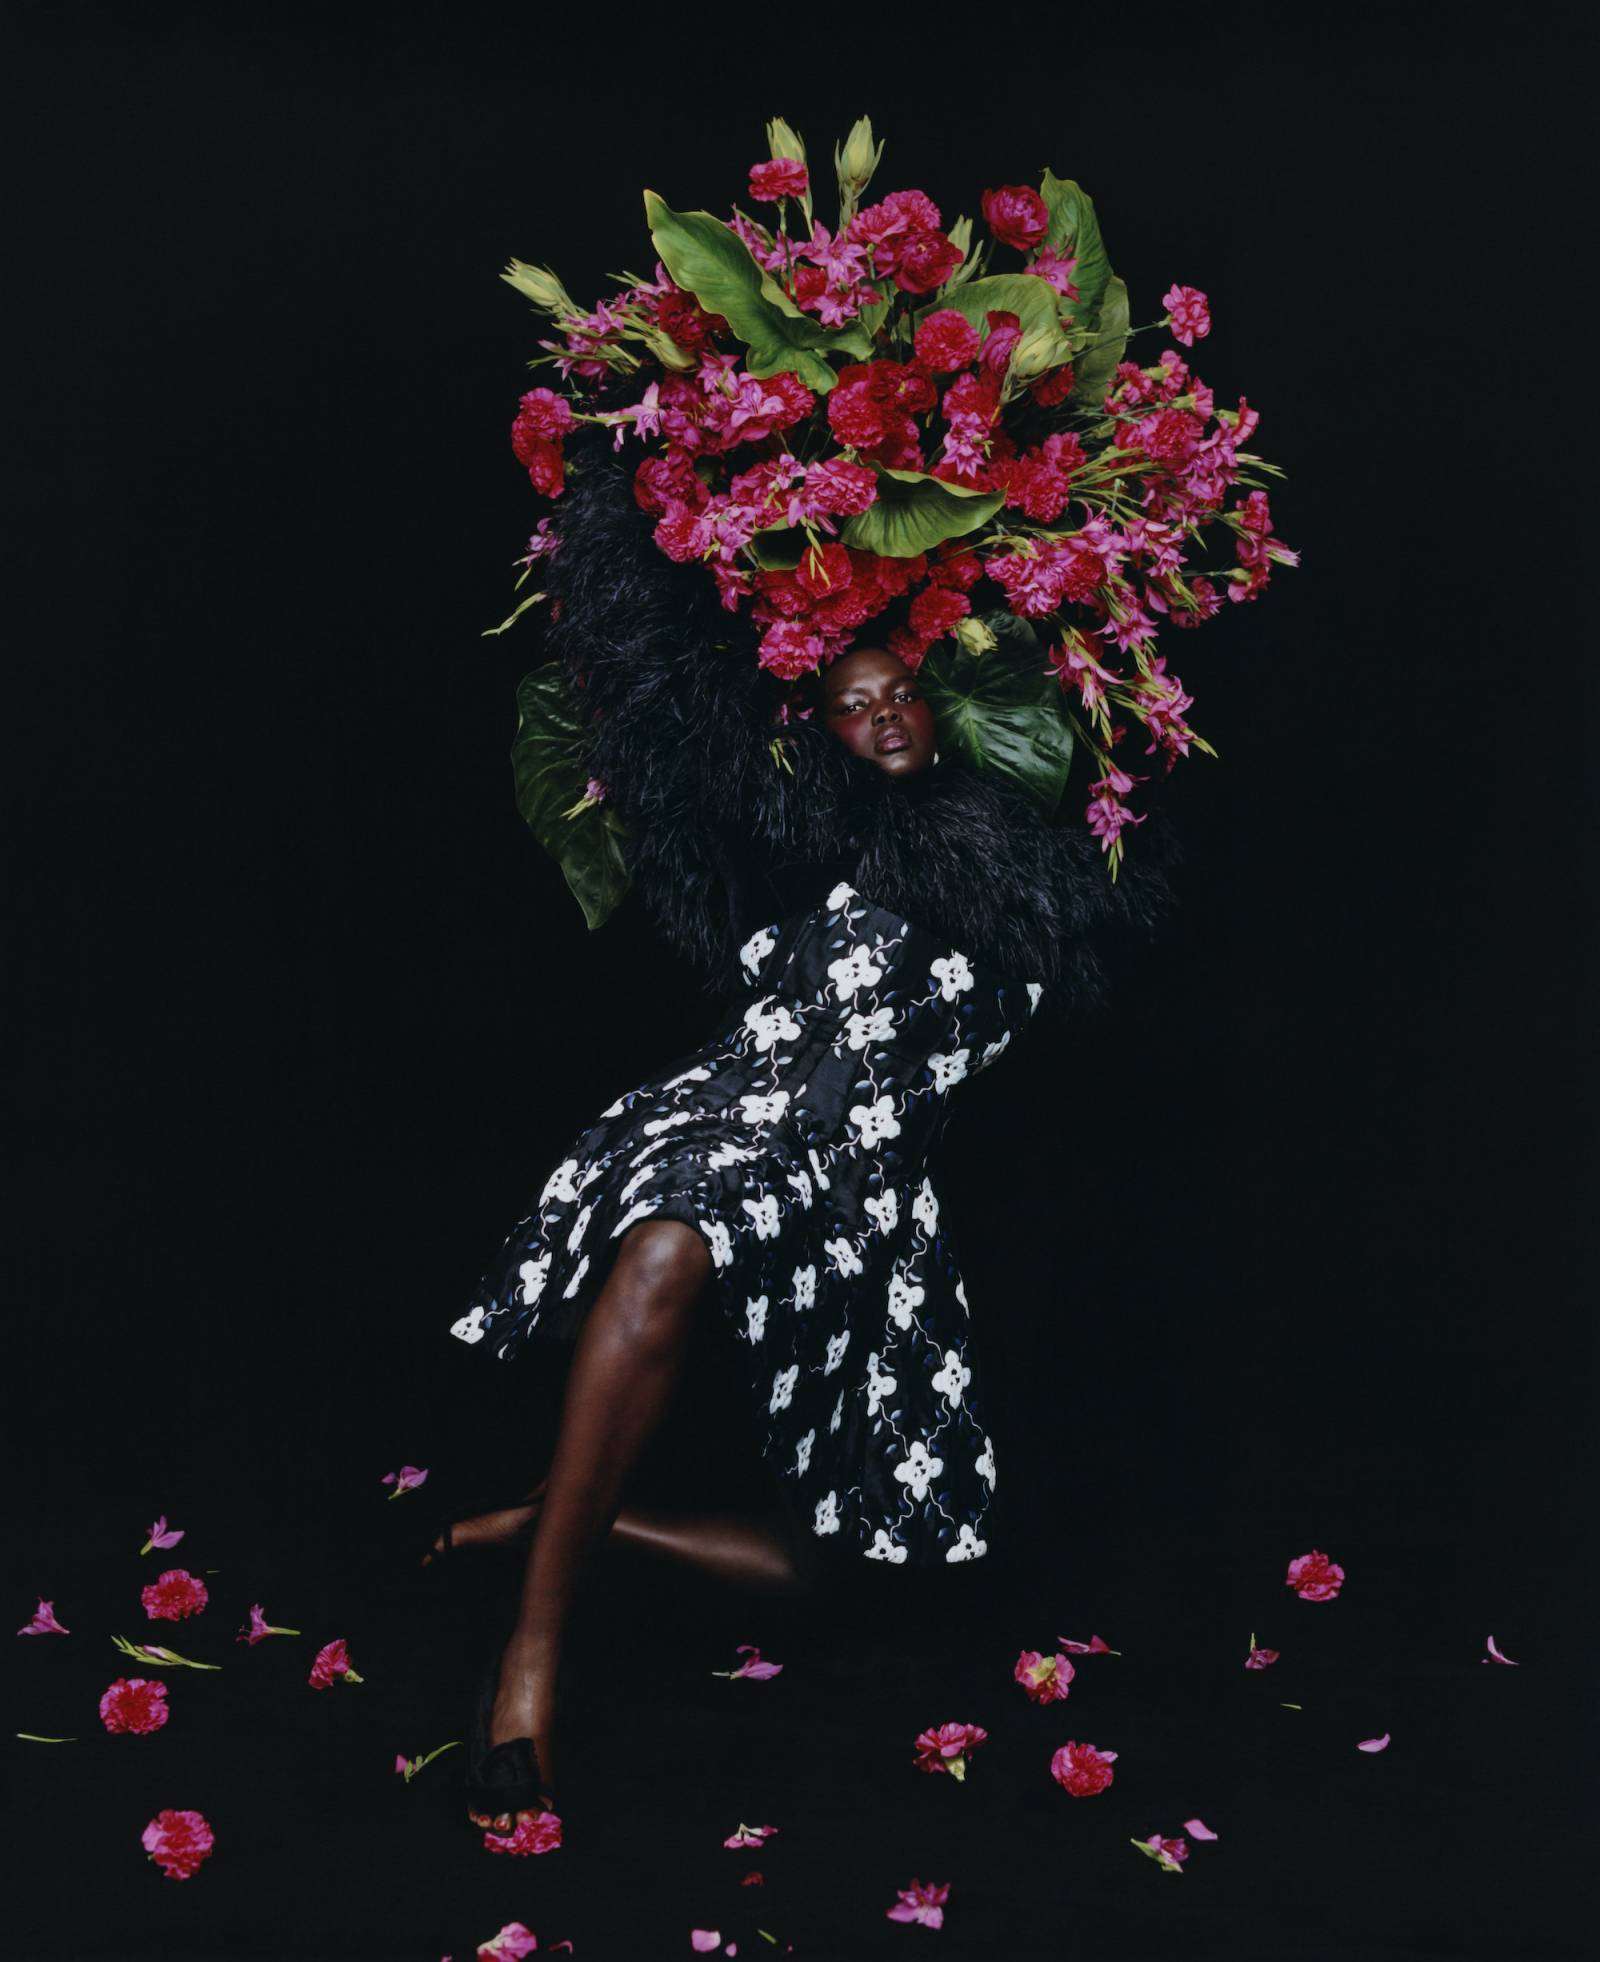 Modelka ubrana w czarno-białą sukienkę trzyma bukiet kwiatów